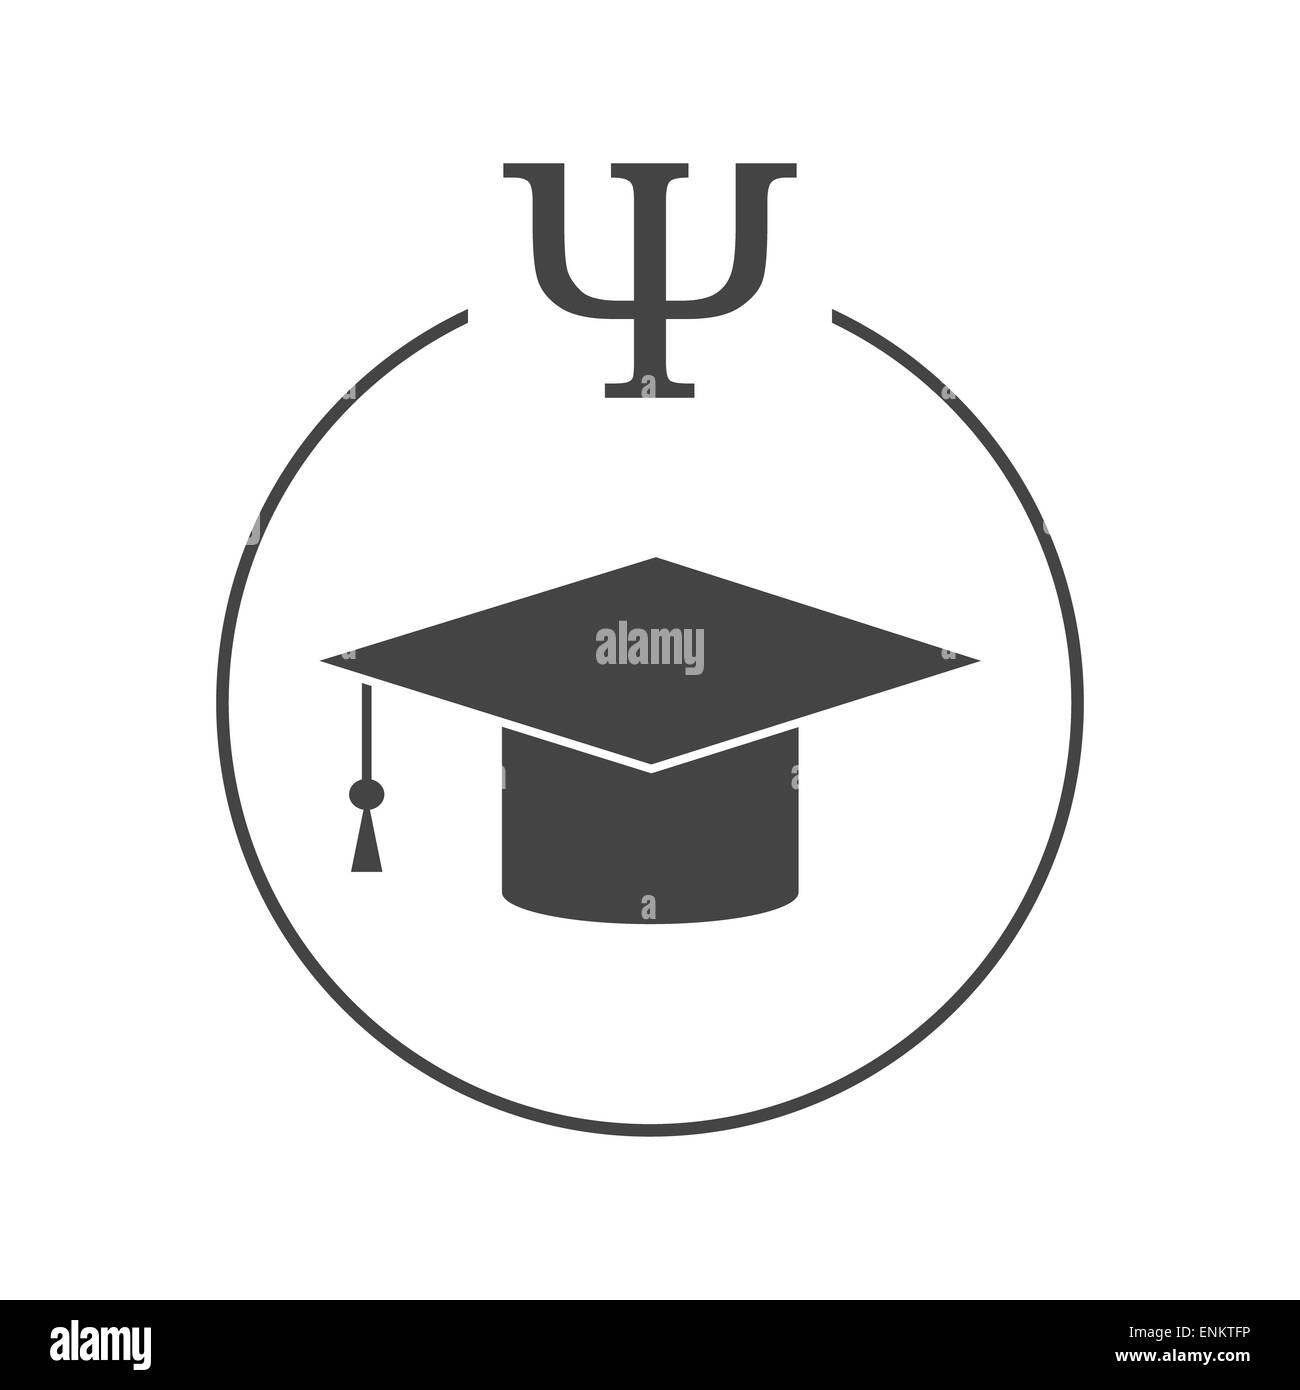 Pour l'éducation ou de la psychologie pédagogique logo. Graduation hat dans un cercle avec psi lettre Banque D'Images